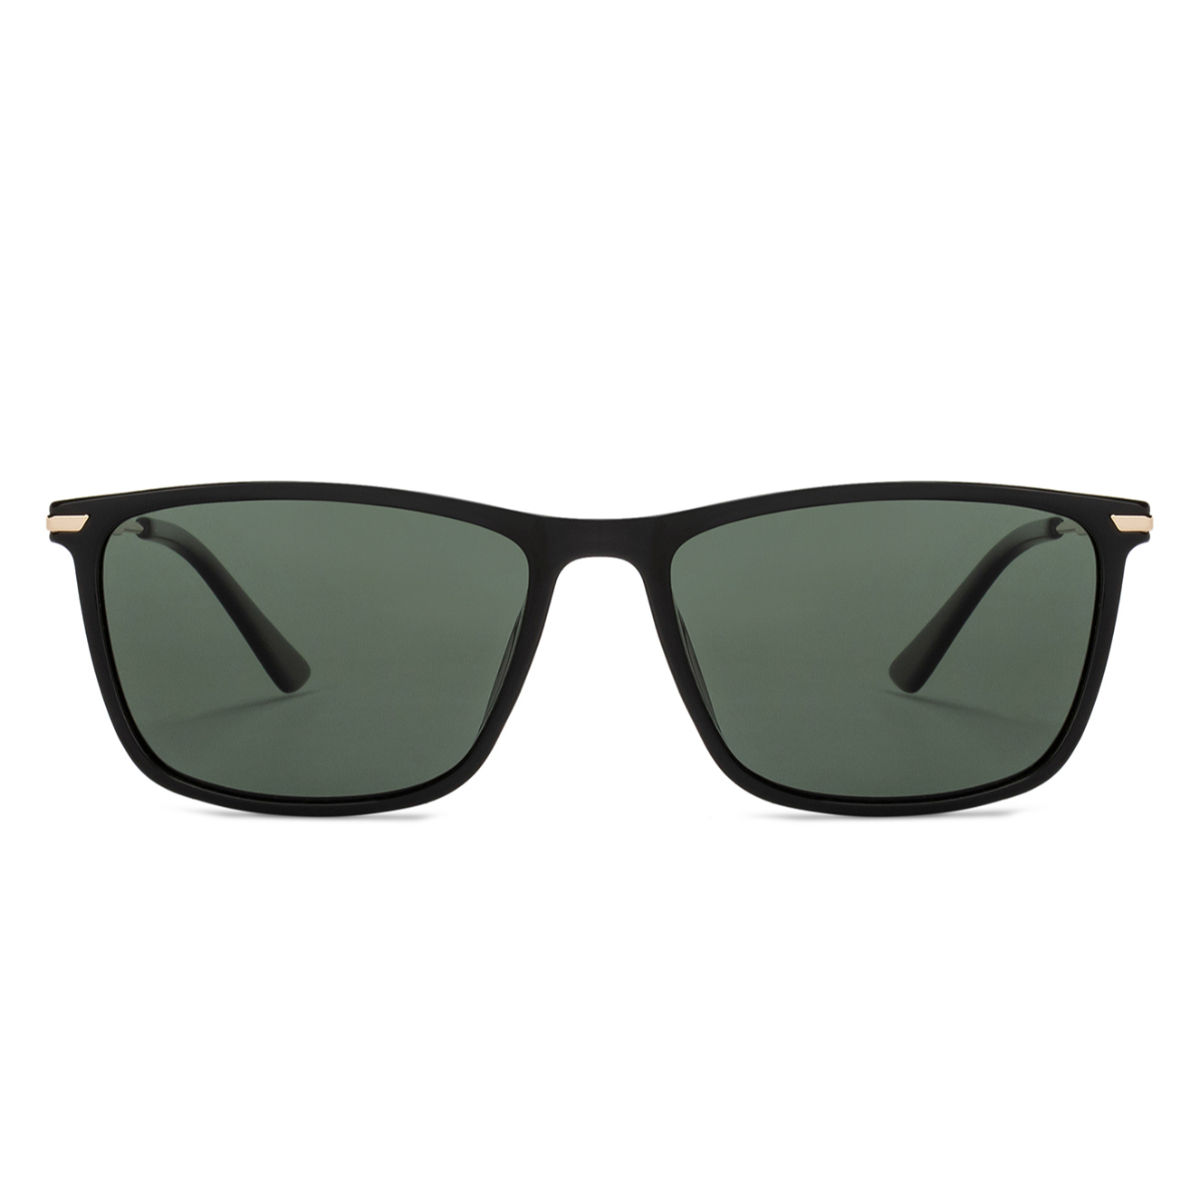 Memori sunglasses for small faces - Cat-Eye Sunglasses - Black – MEMORÍ  EYEWEAR